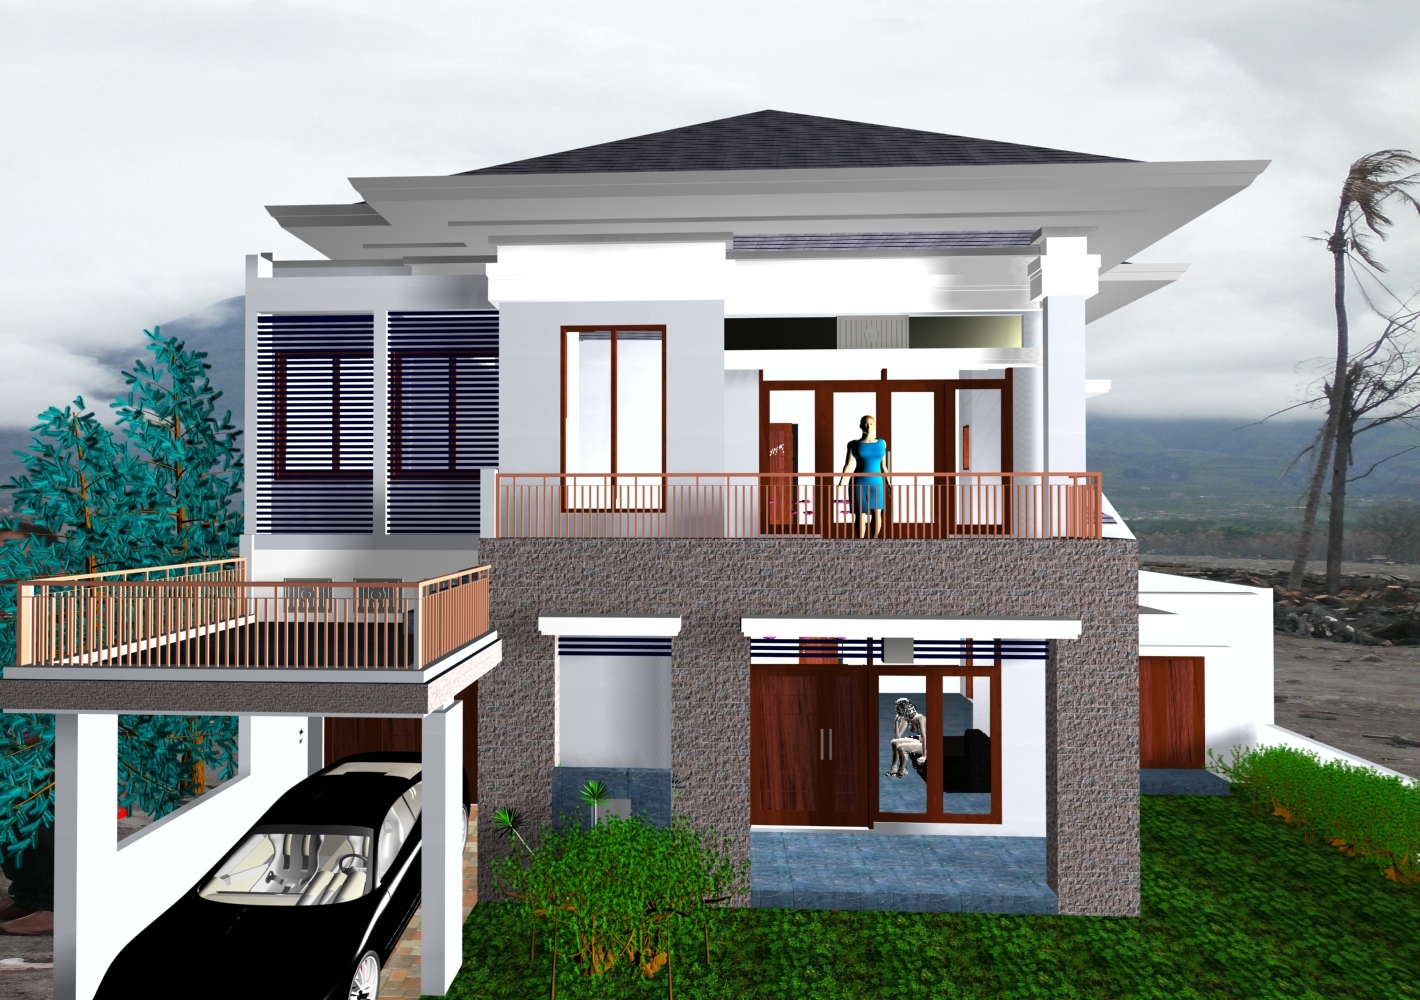 Desain Rumah Idaman 2016 Prathama Raghavan